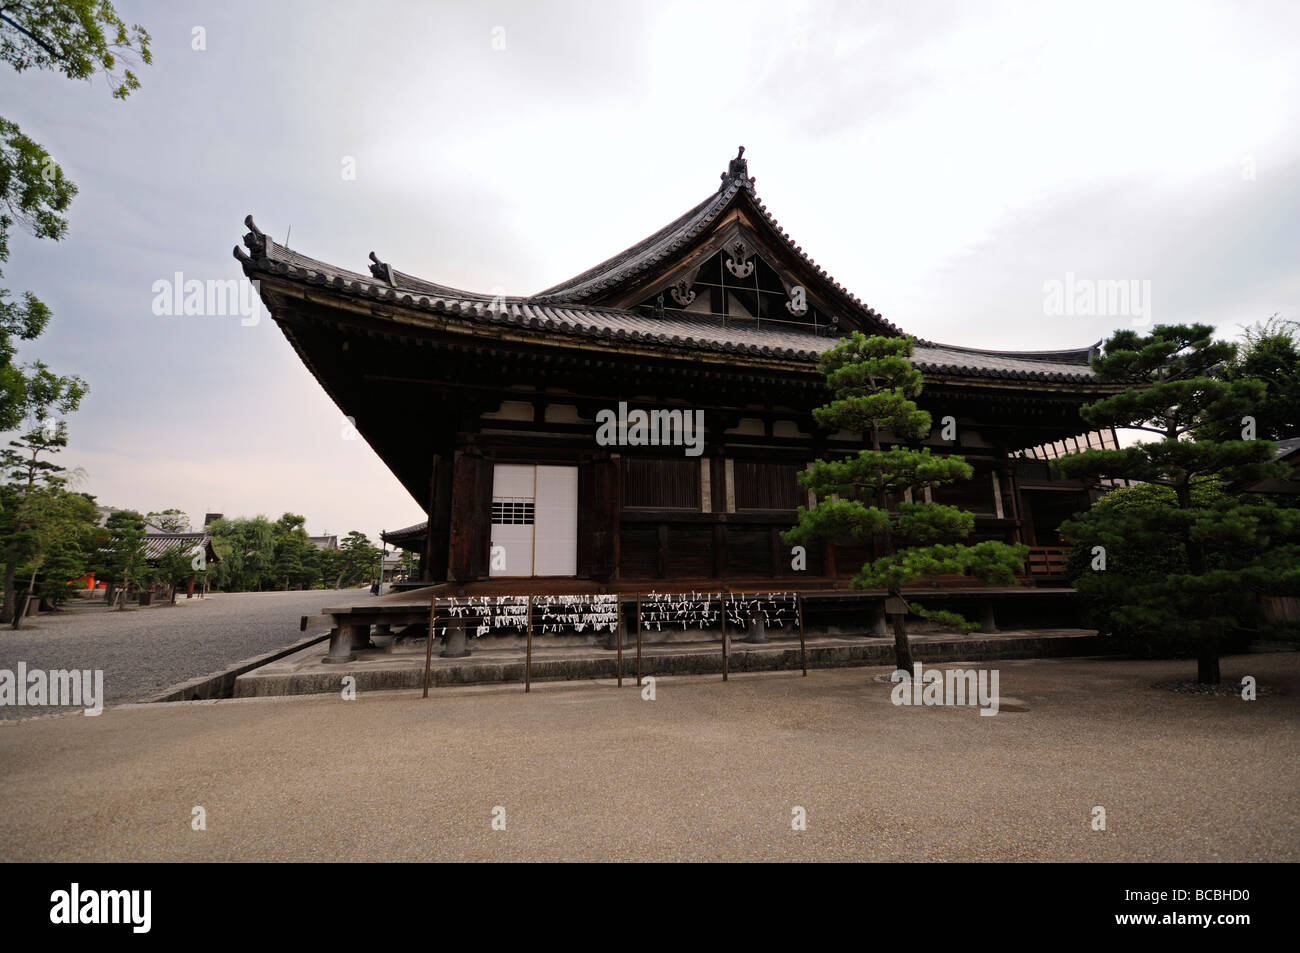 Hall principal de Sanjusangen-do temple bouddhiste (aka Rengeo-in). Quartier Higashiyama. Le protocole de Kyoto. Région du Kansai. Le Japon Banque D'Images